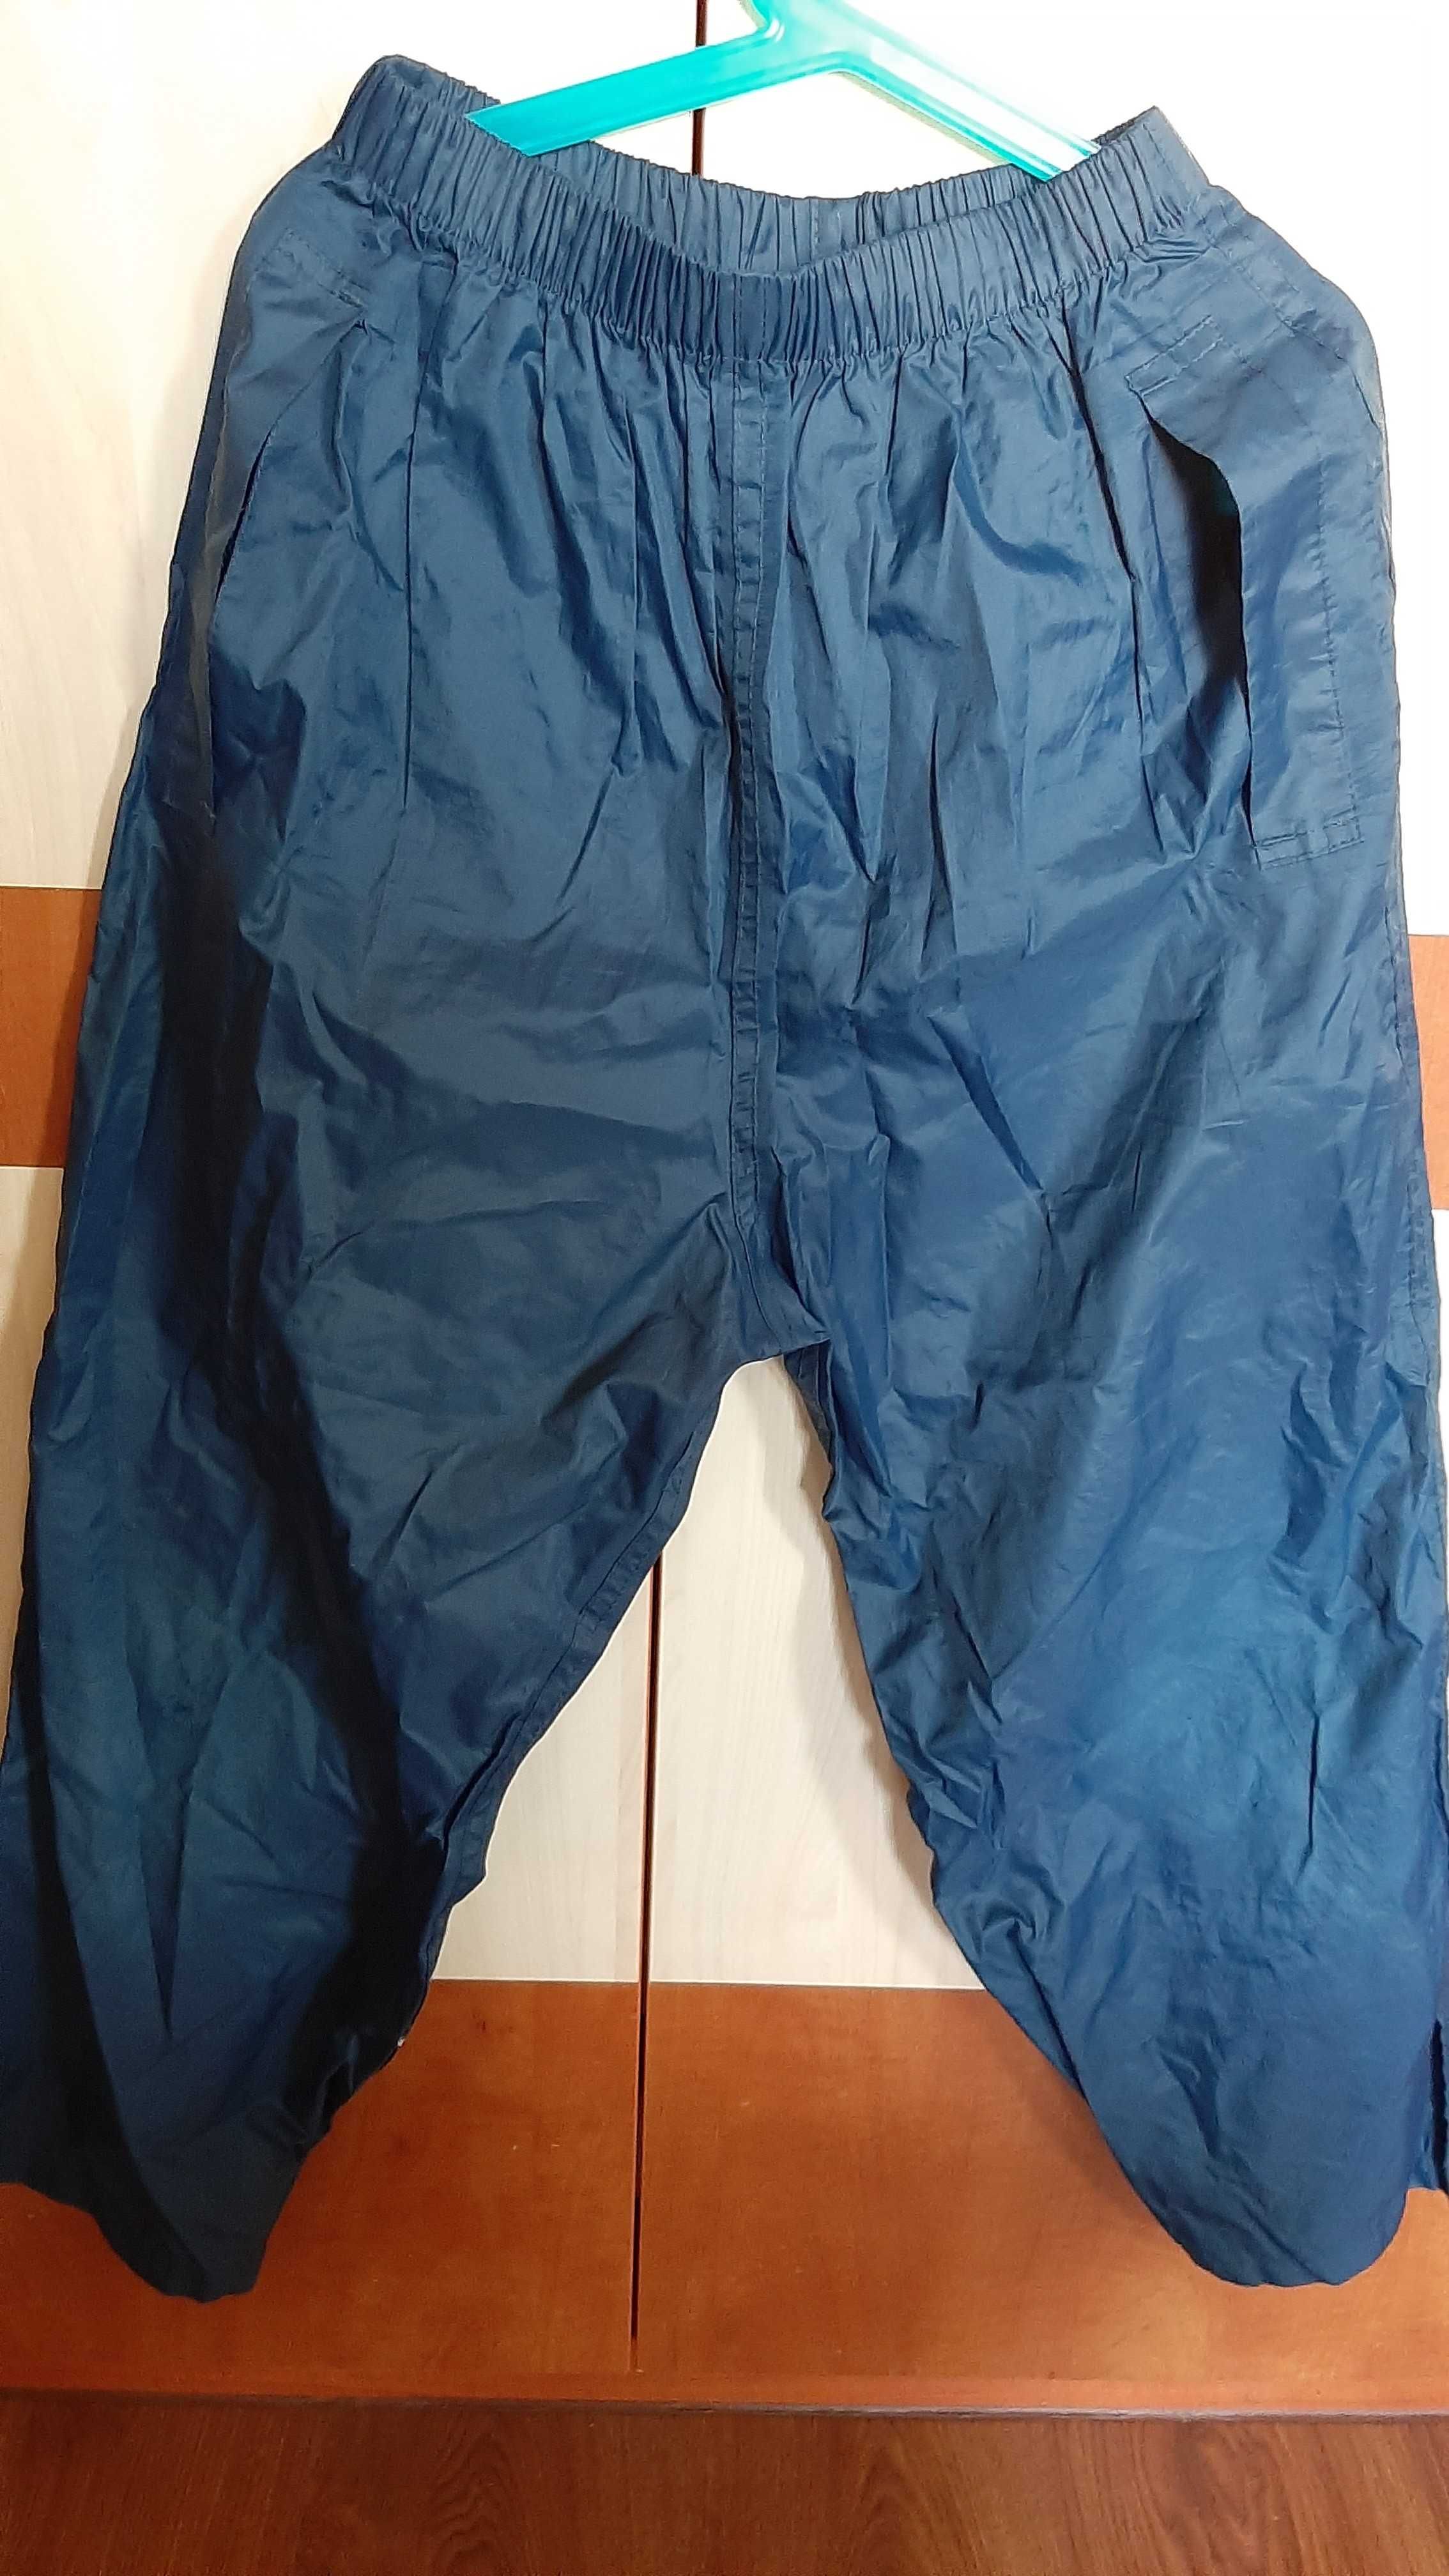 Spodnie ortalionowe, przeciwdeszczowe Regatta 140 cm.